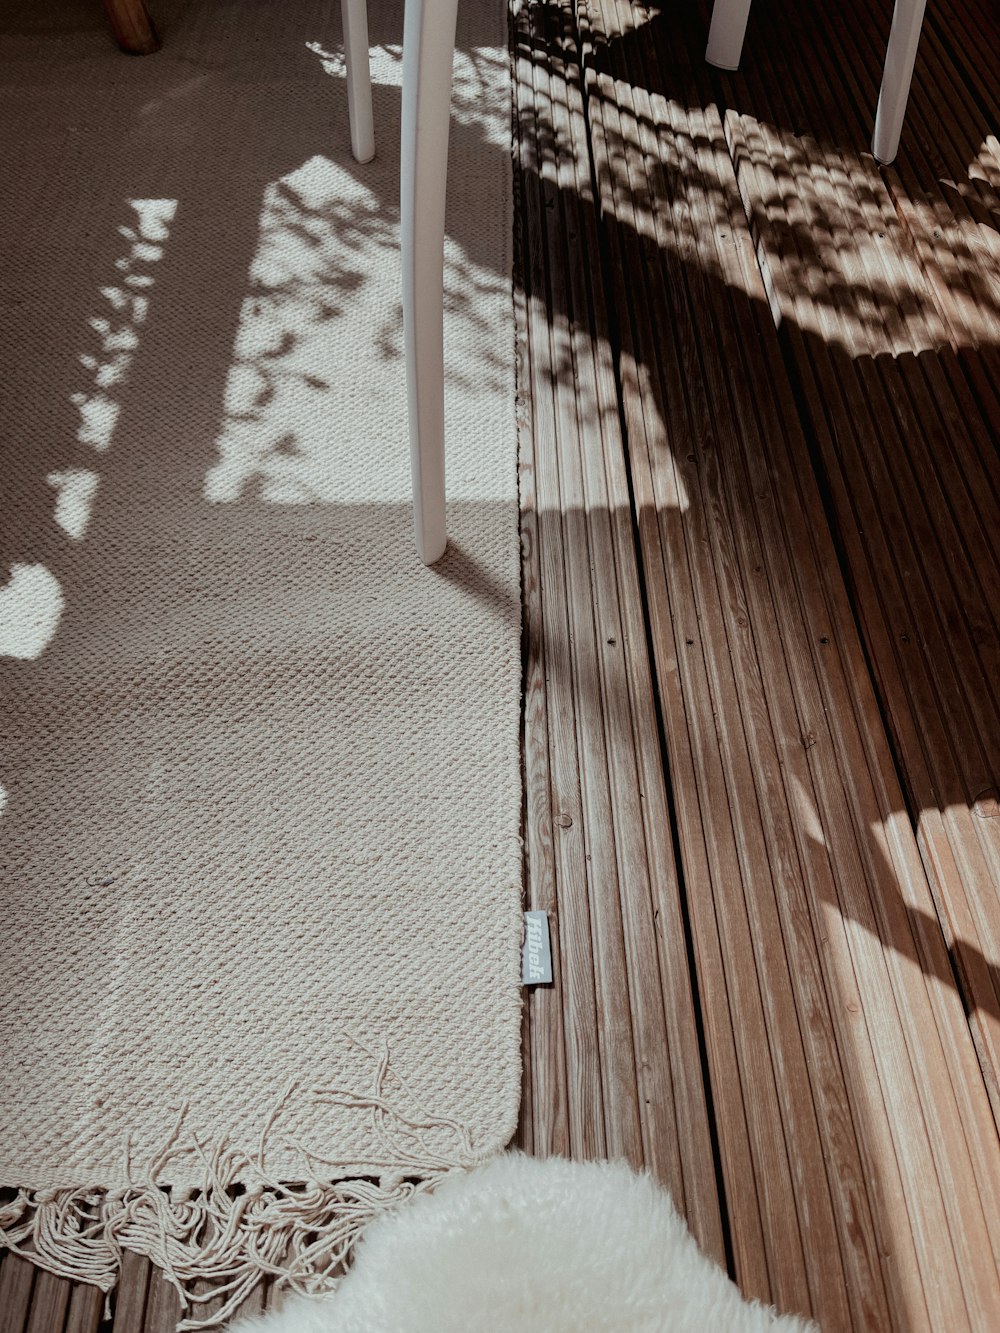 sombra da pessoa no chão de madeira